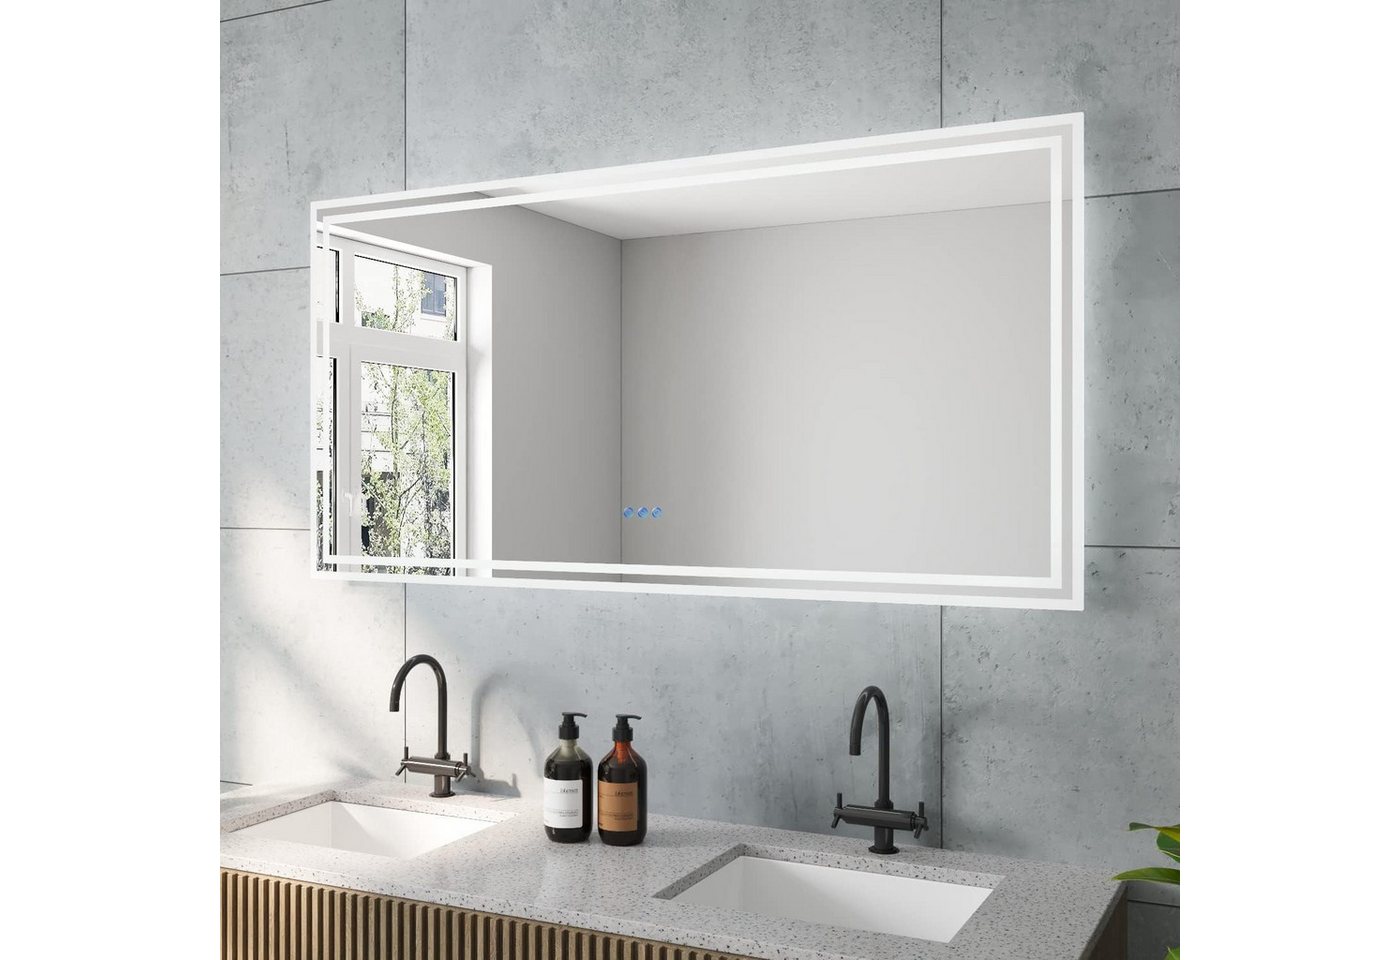 AQUALAVOS Wandspiegel Großer 140x70cm Badspiegel mit Warmweiß/Kaltweiß Licht LED Beleuchtung, Touchschalter/Wandschalter, Dimmbar, Beschlagfrei, Memory-Funktion von AQUALAVOS